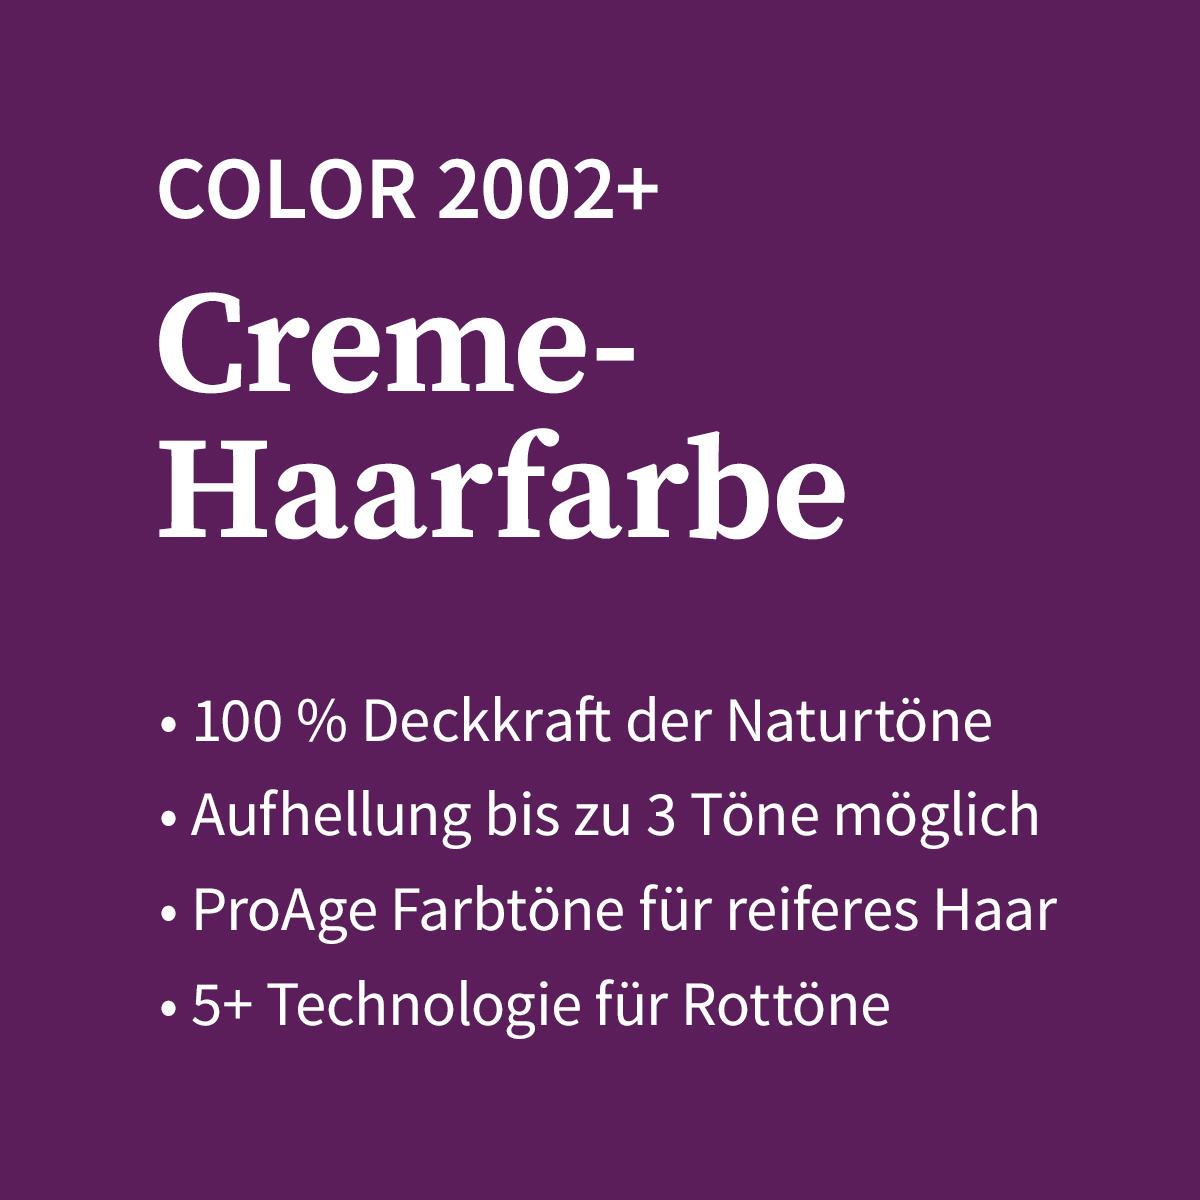 Basler Color 2002+ Cremehaarfarbe P2 pastell pink, Tube 60 ml - 4